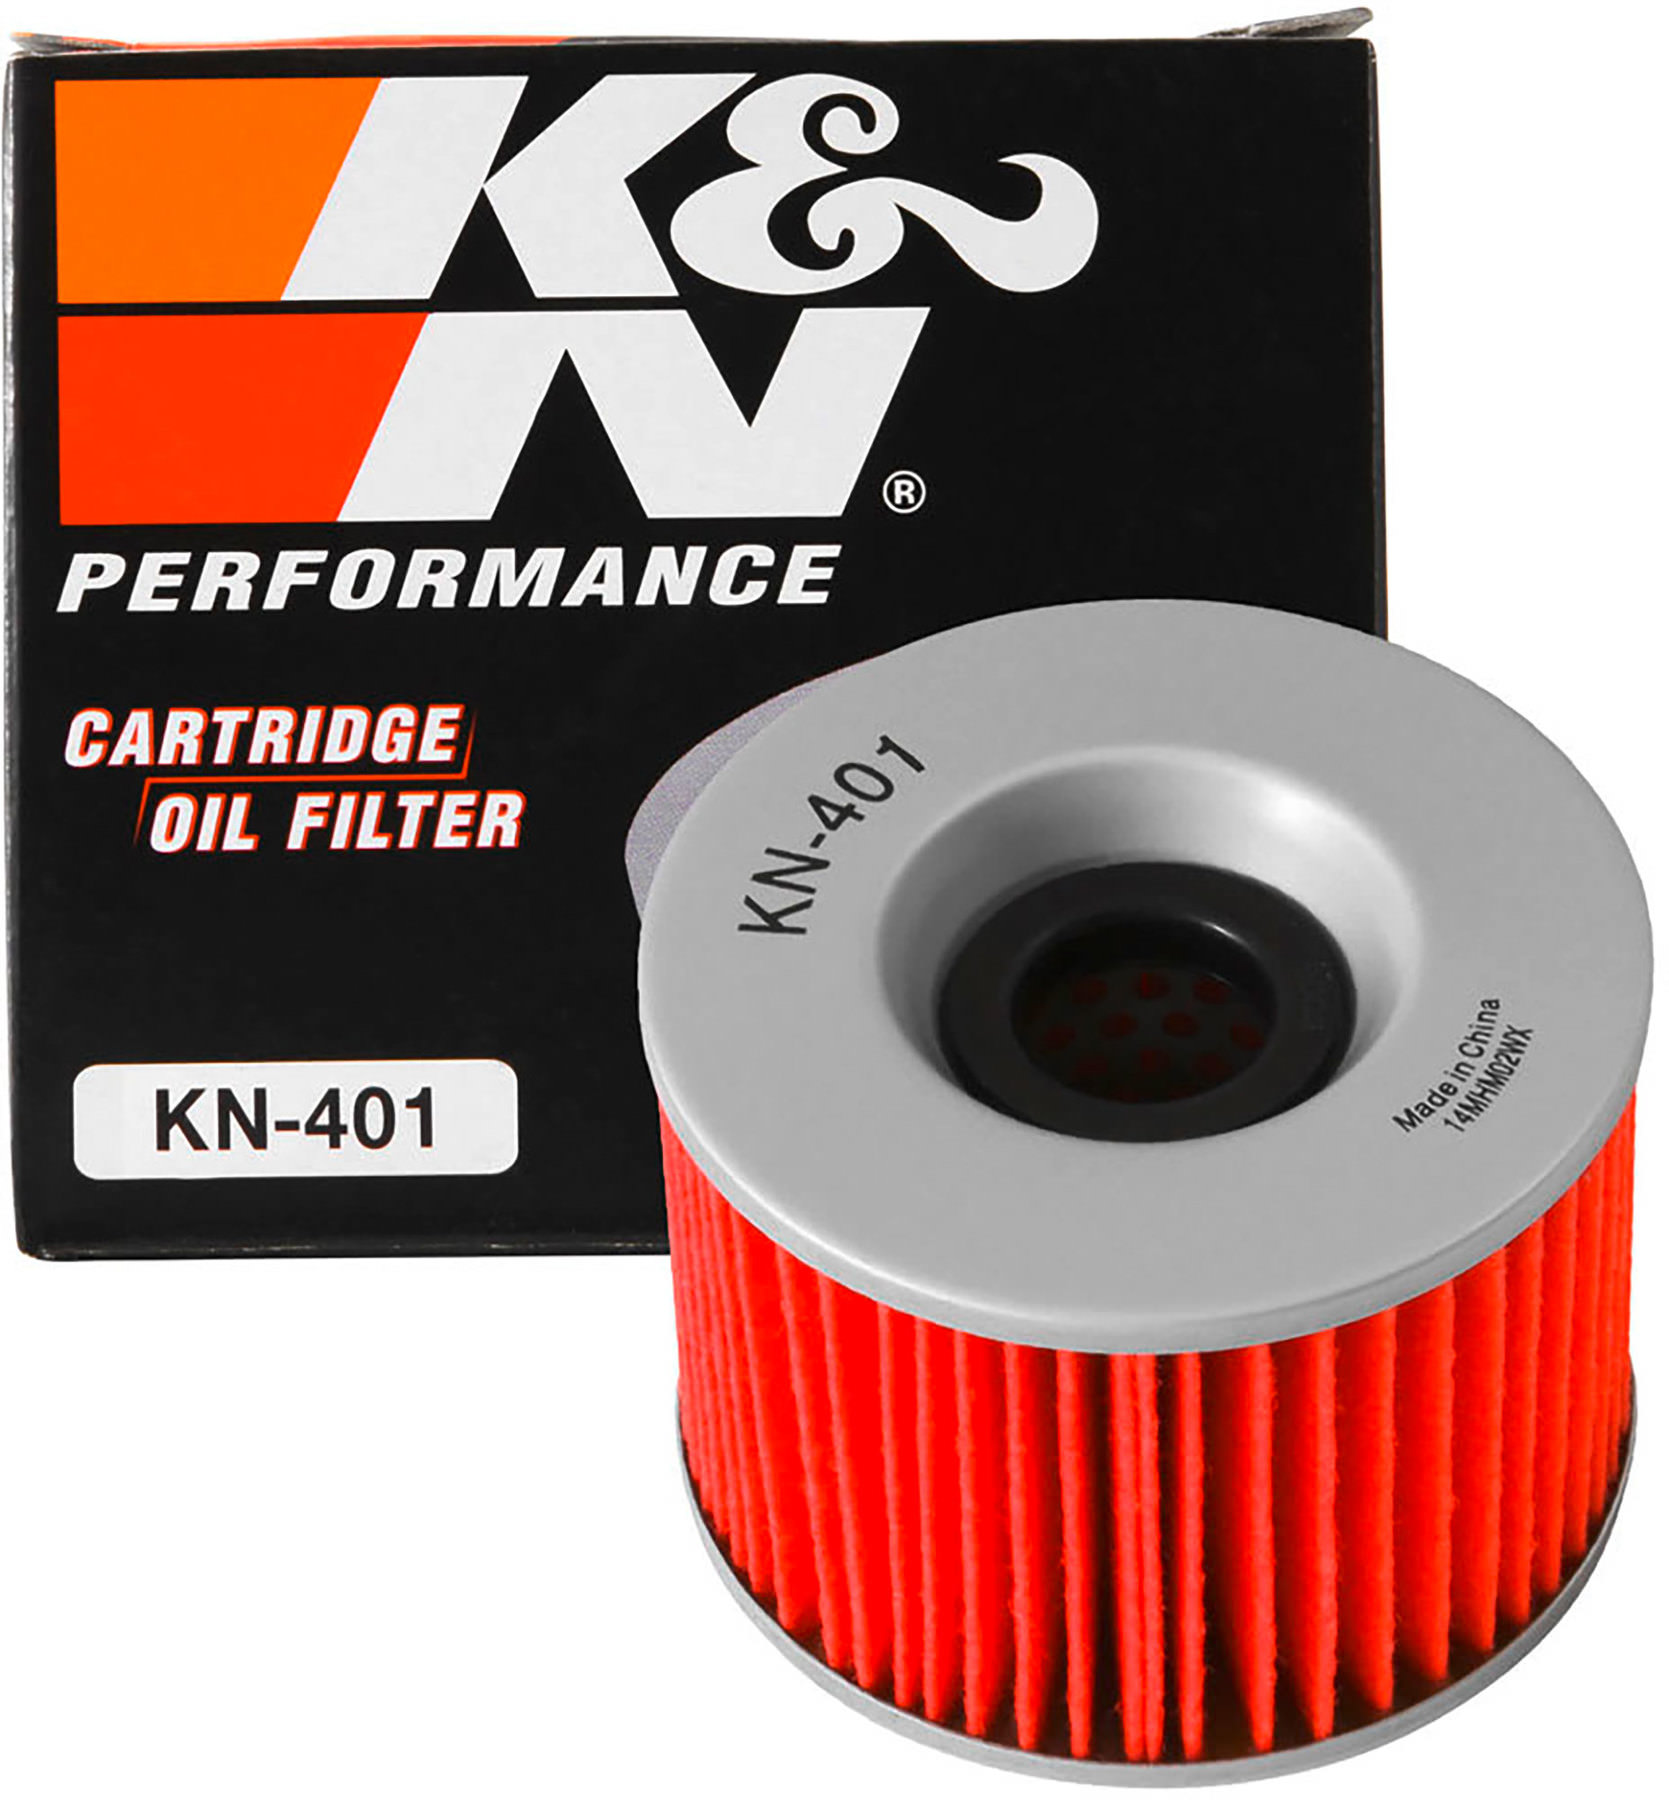 Oil Filters Pro Series Powersports Cartridge K&N KN-151 6 Pack 